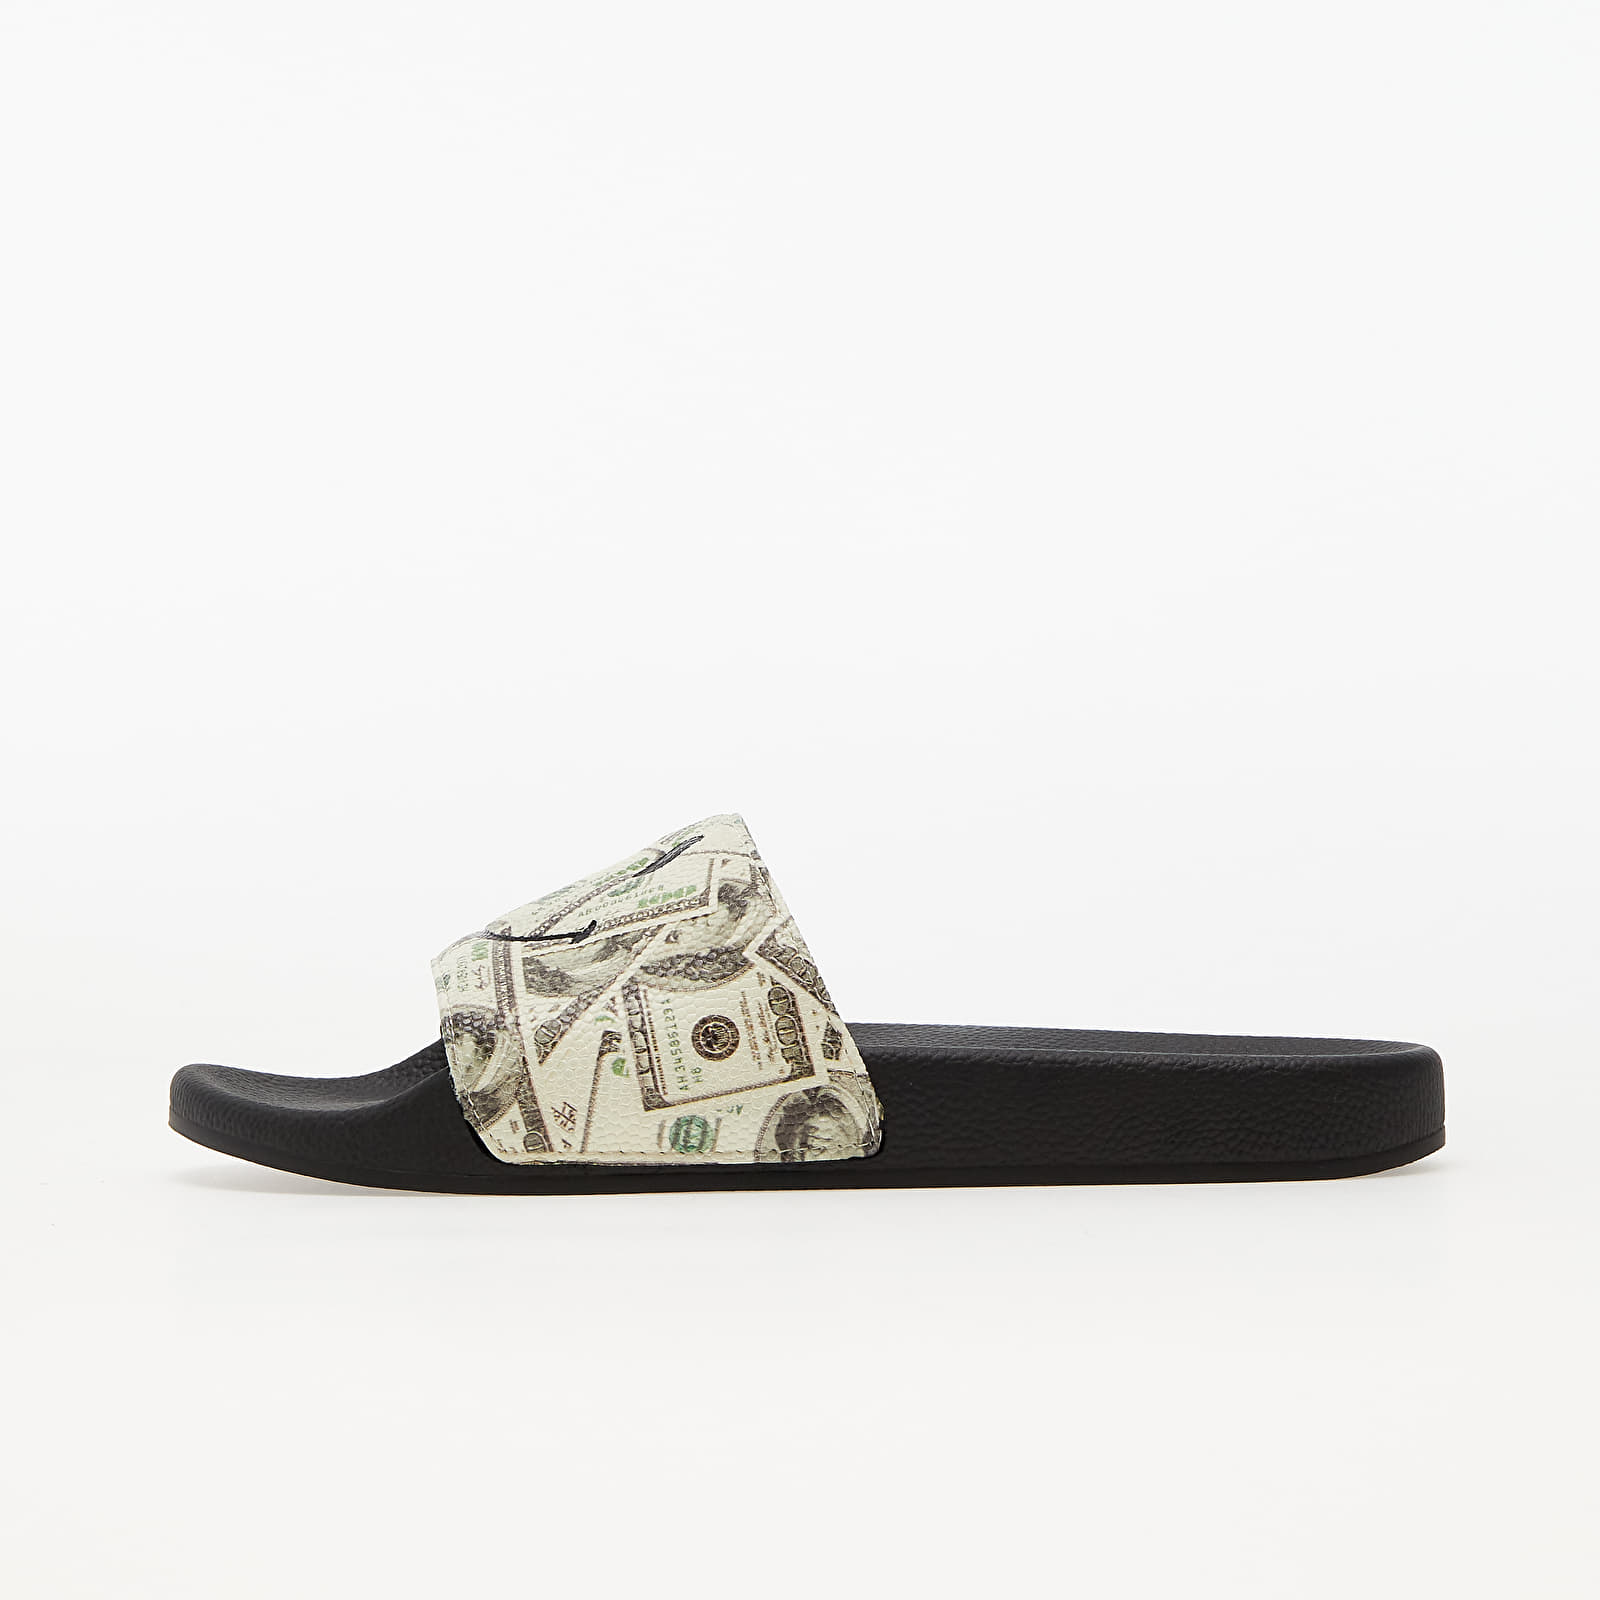 Herren Sneaker und Schuhe MARKET Smiley Money Slides Black